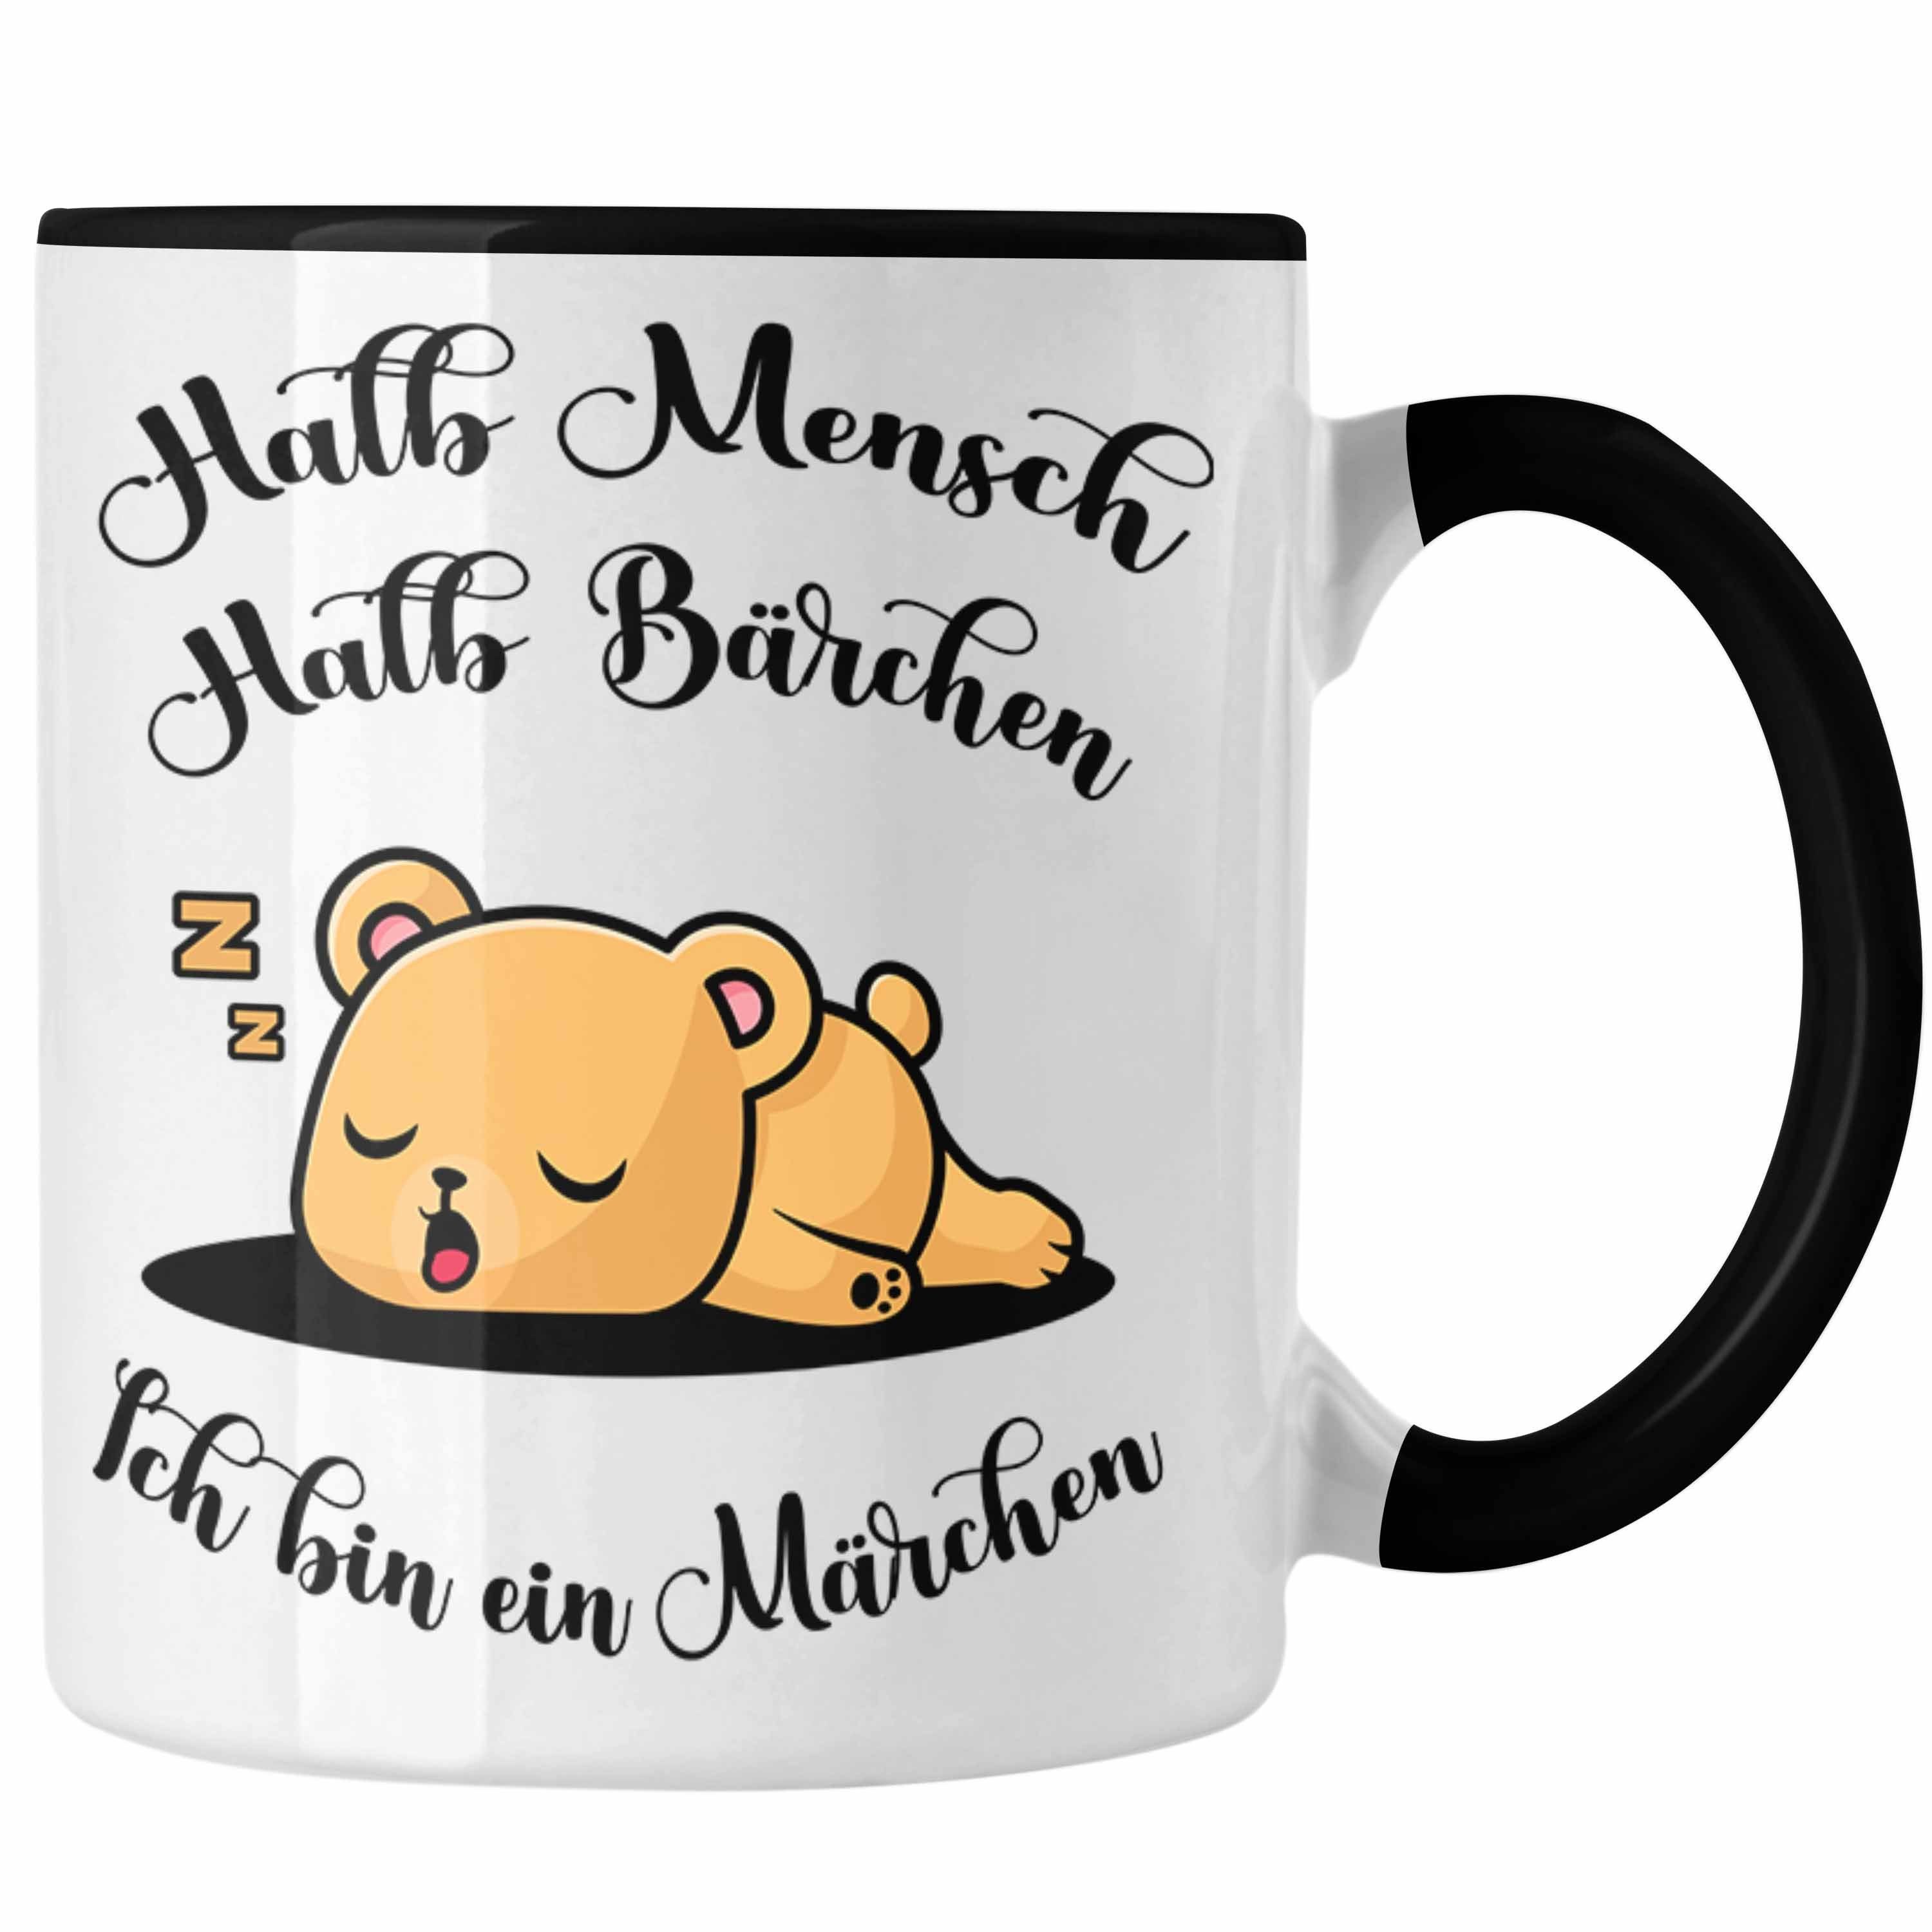 Trendation Tasse Süße Bärchen Tasse Tierliebhaber Halb Mensch Halb Bärchen Schwarz Geschenk